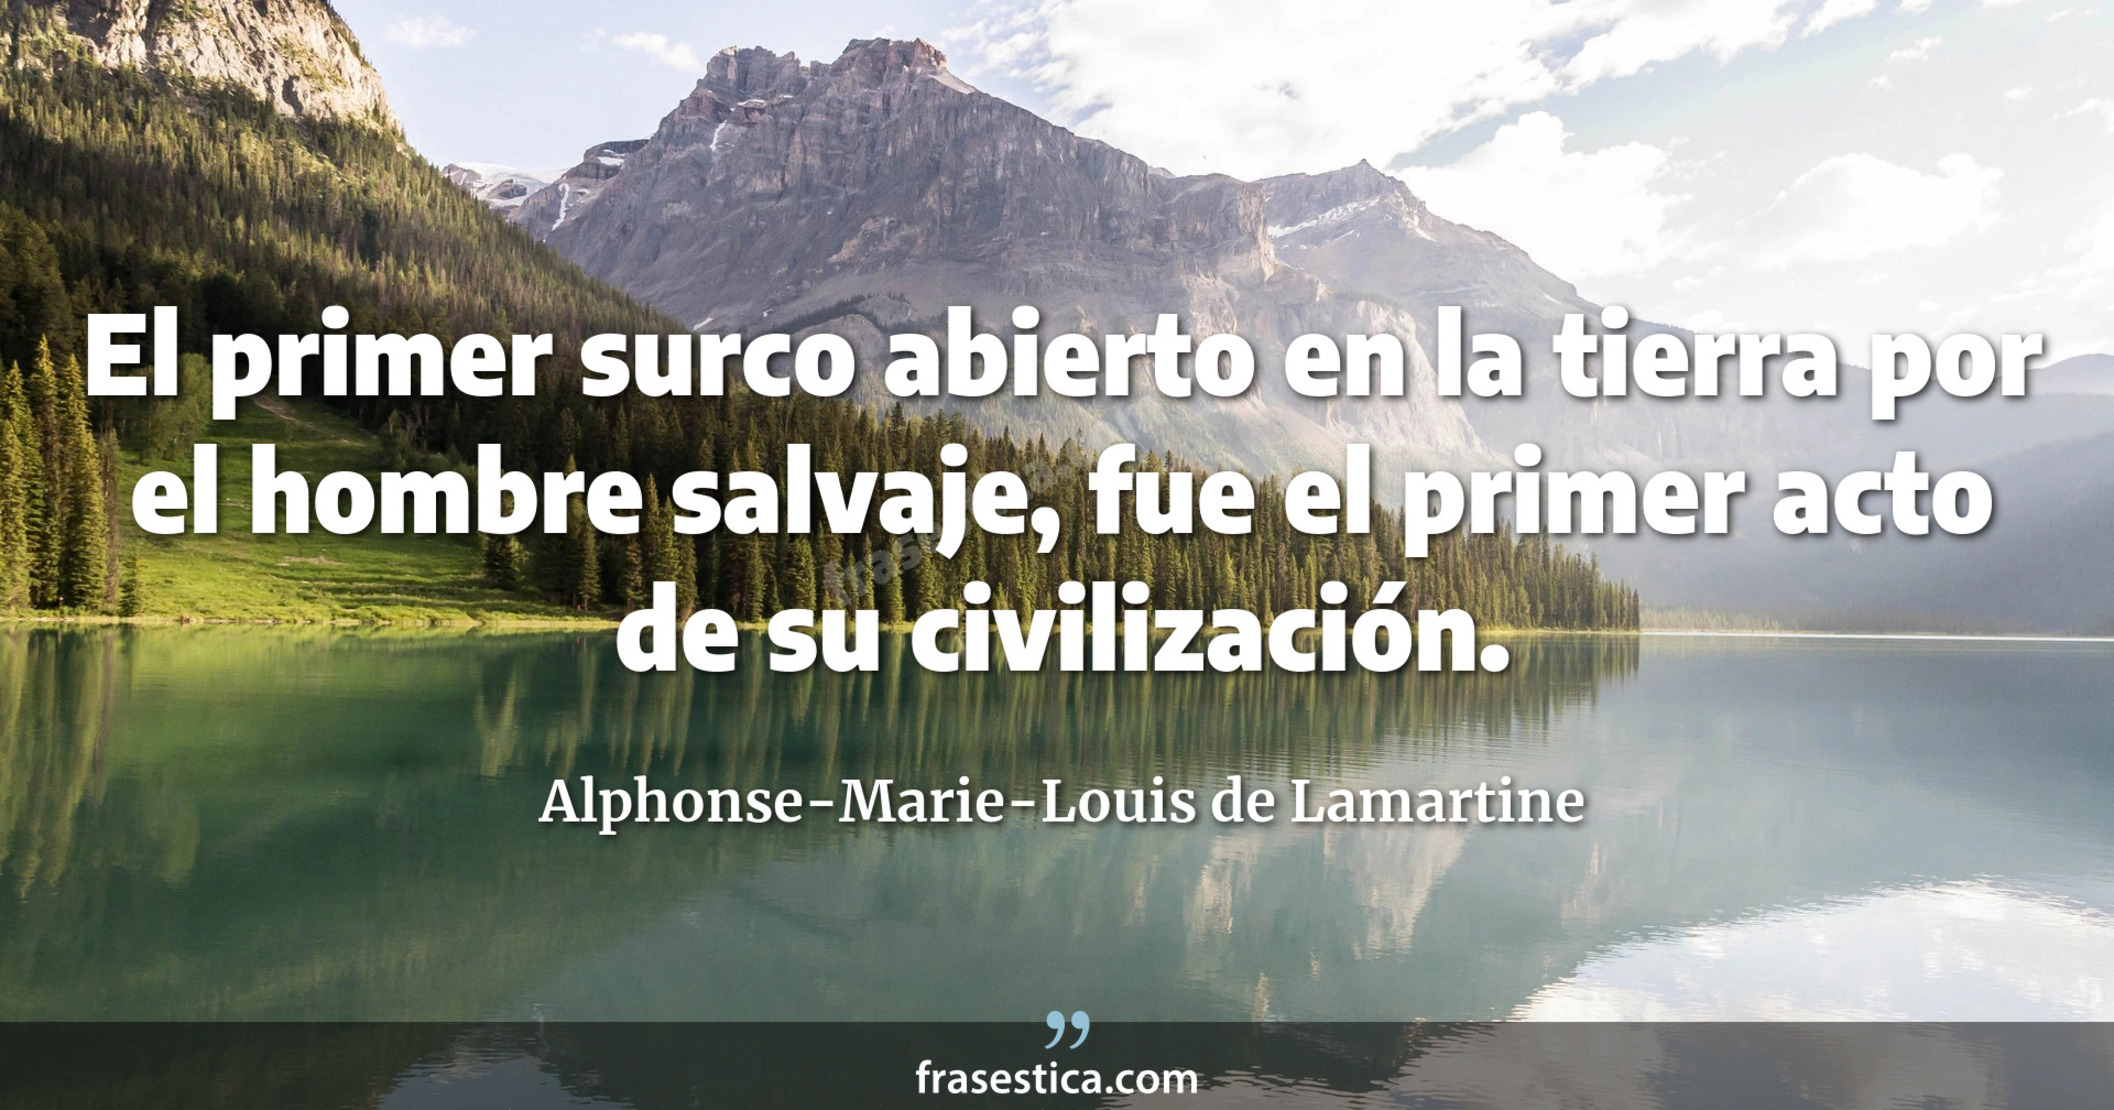 El primer surco abierto en la tierra por el hombre salvaje, fue el primer acto de su civilización. - Alphonse-Marie-Louis de Lamartine